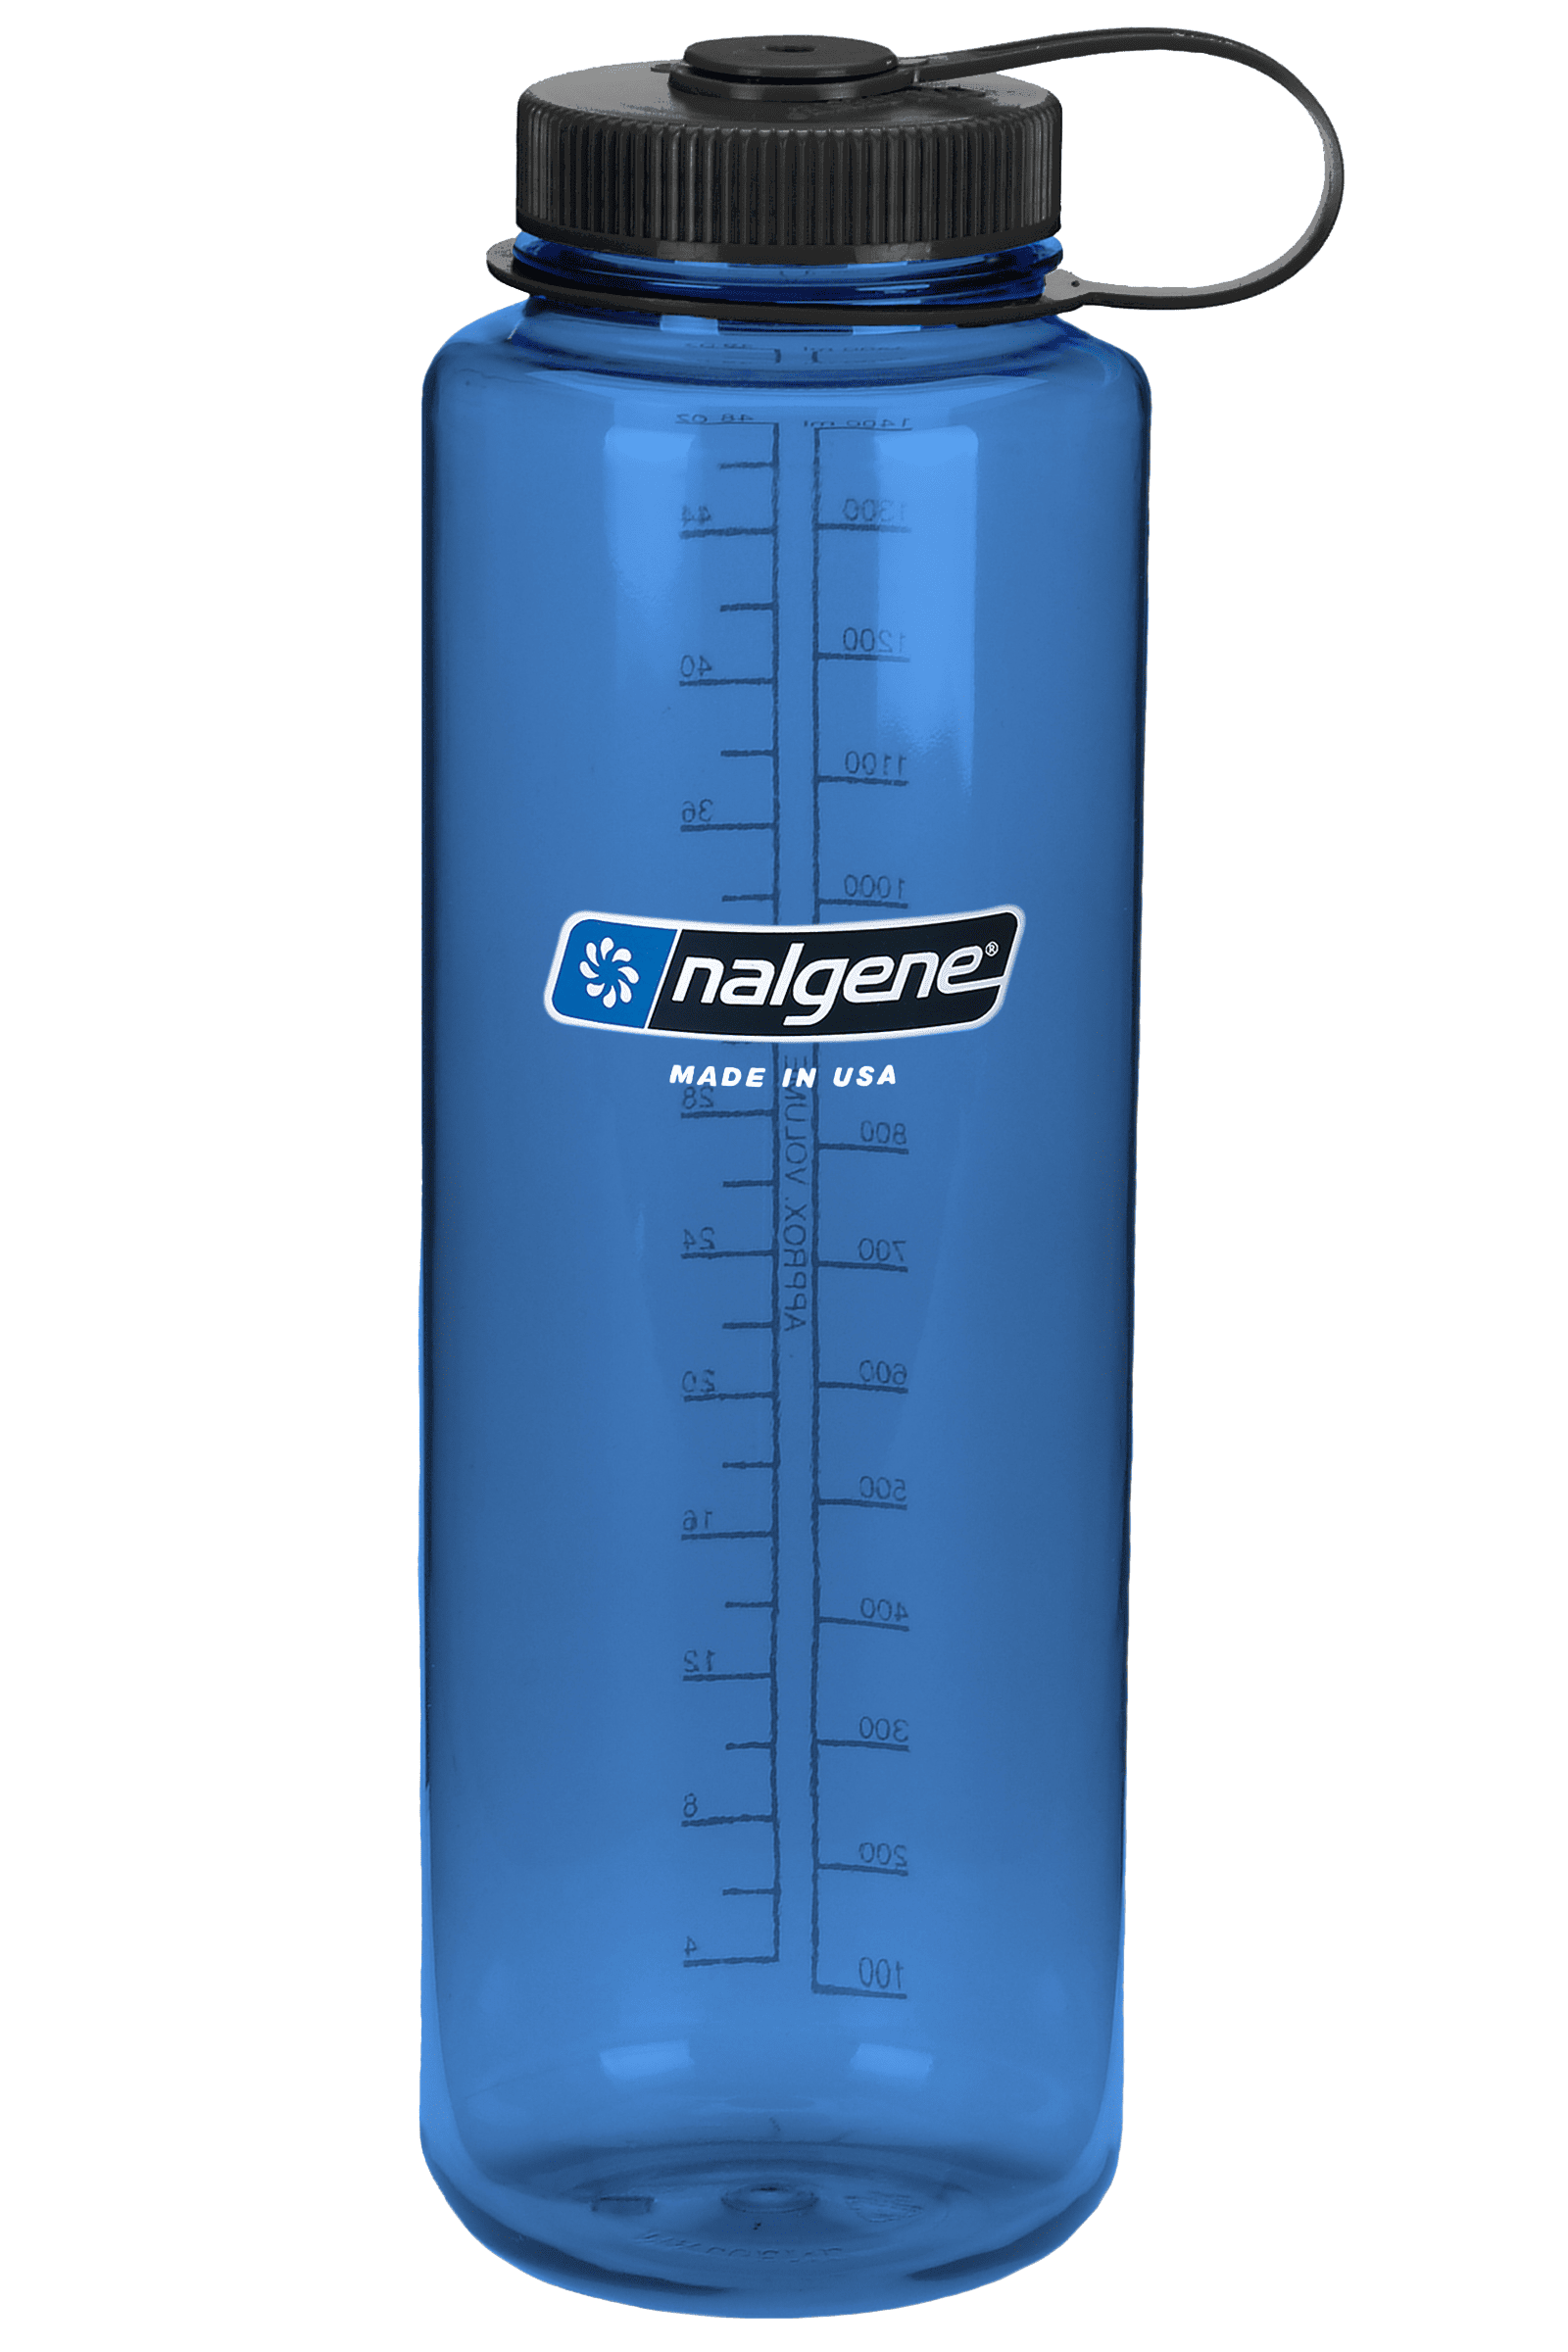 Nalgene Backpacker Stainless Steel Bottle oz. 32 fl 